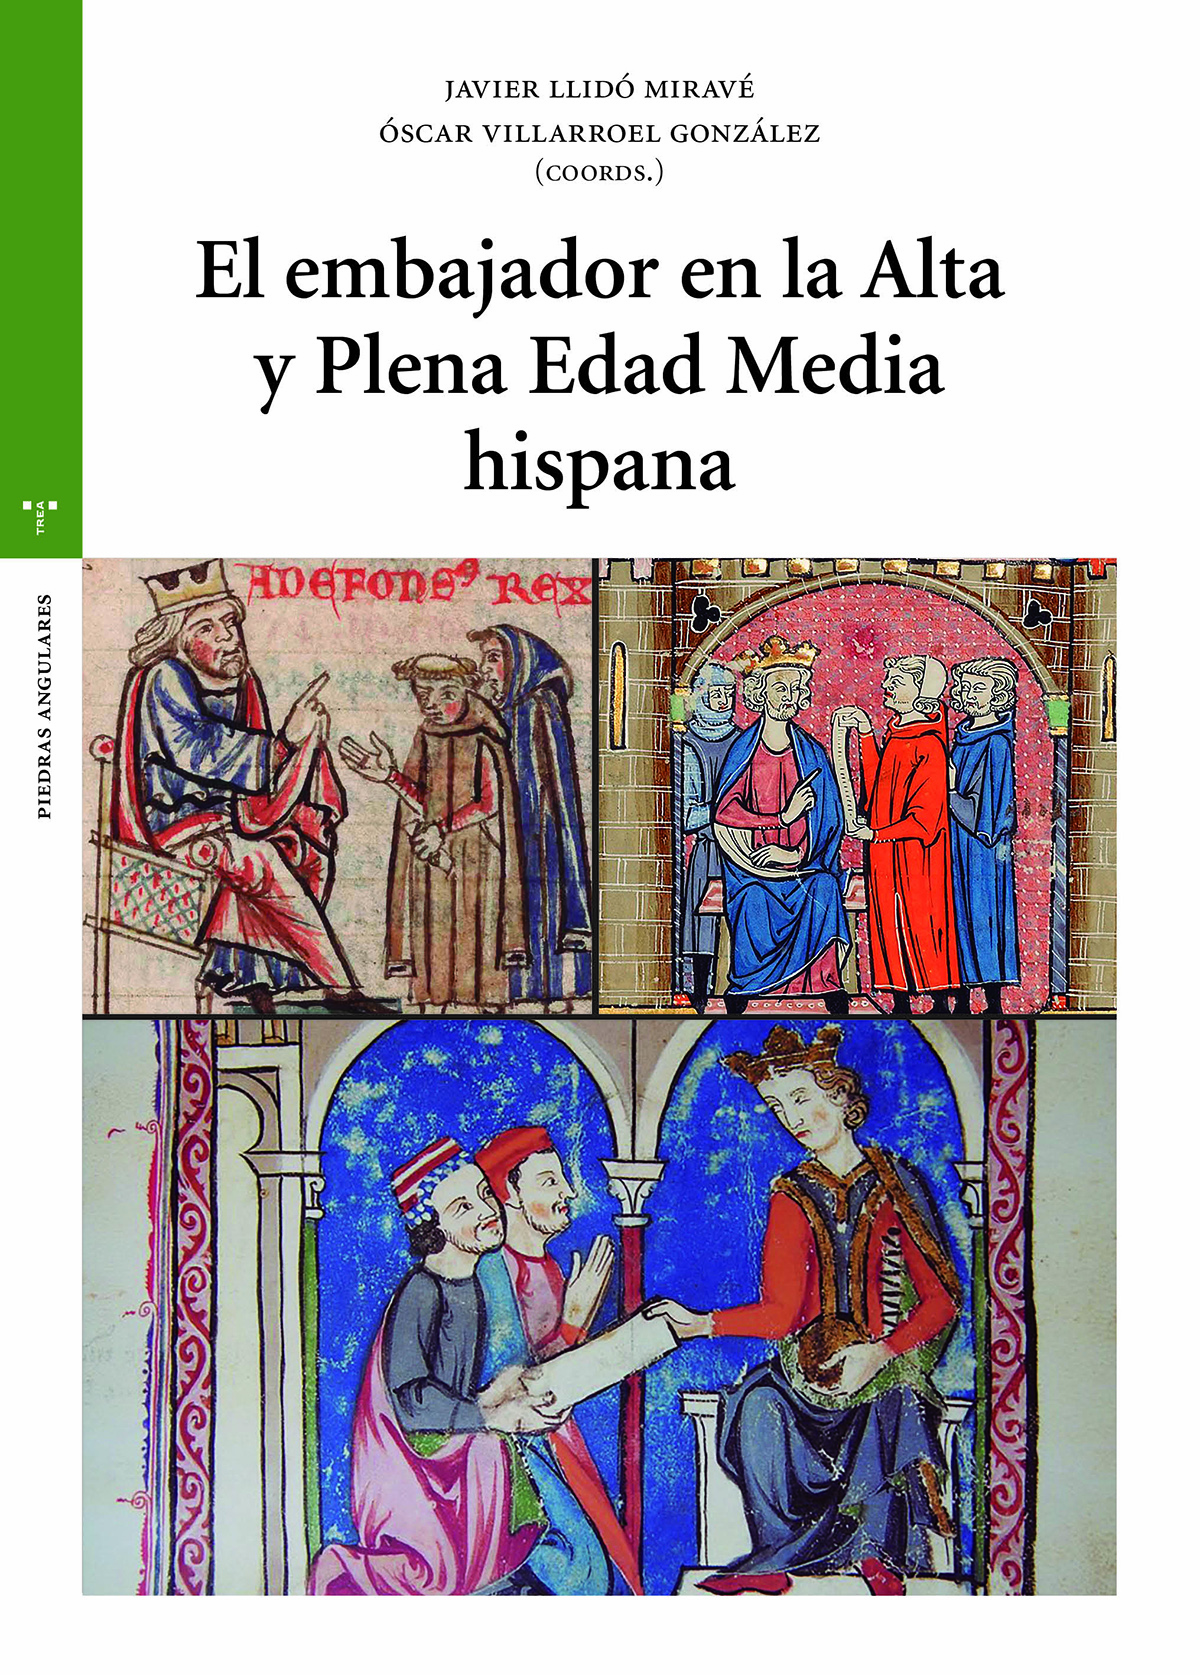 El embajador en la Alta y Plena Edad Media hispana